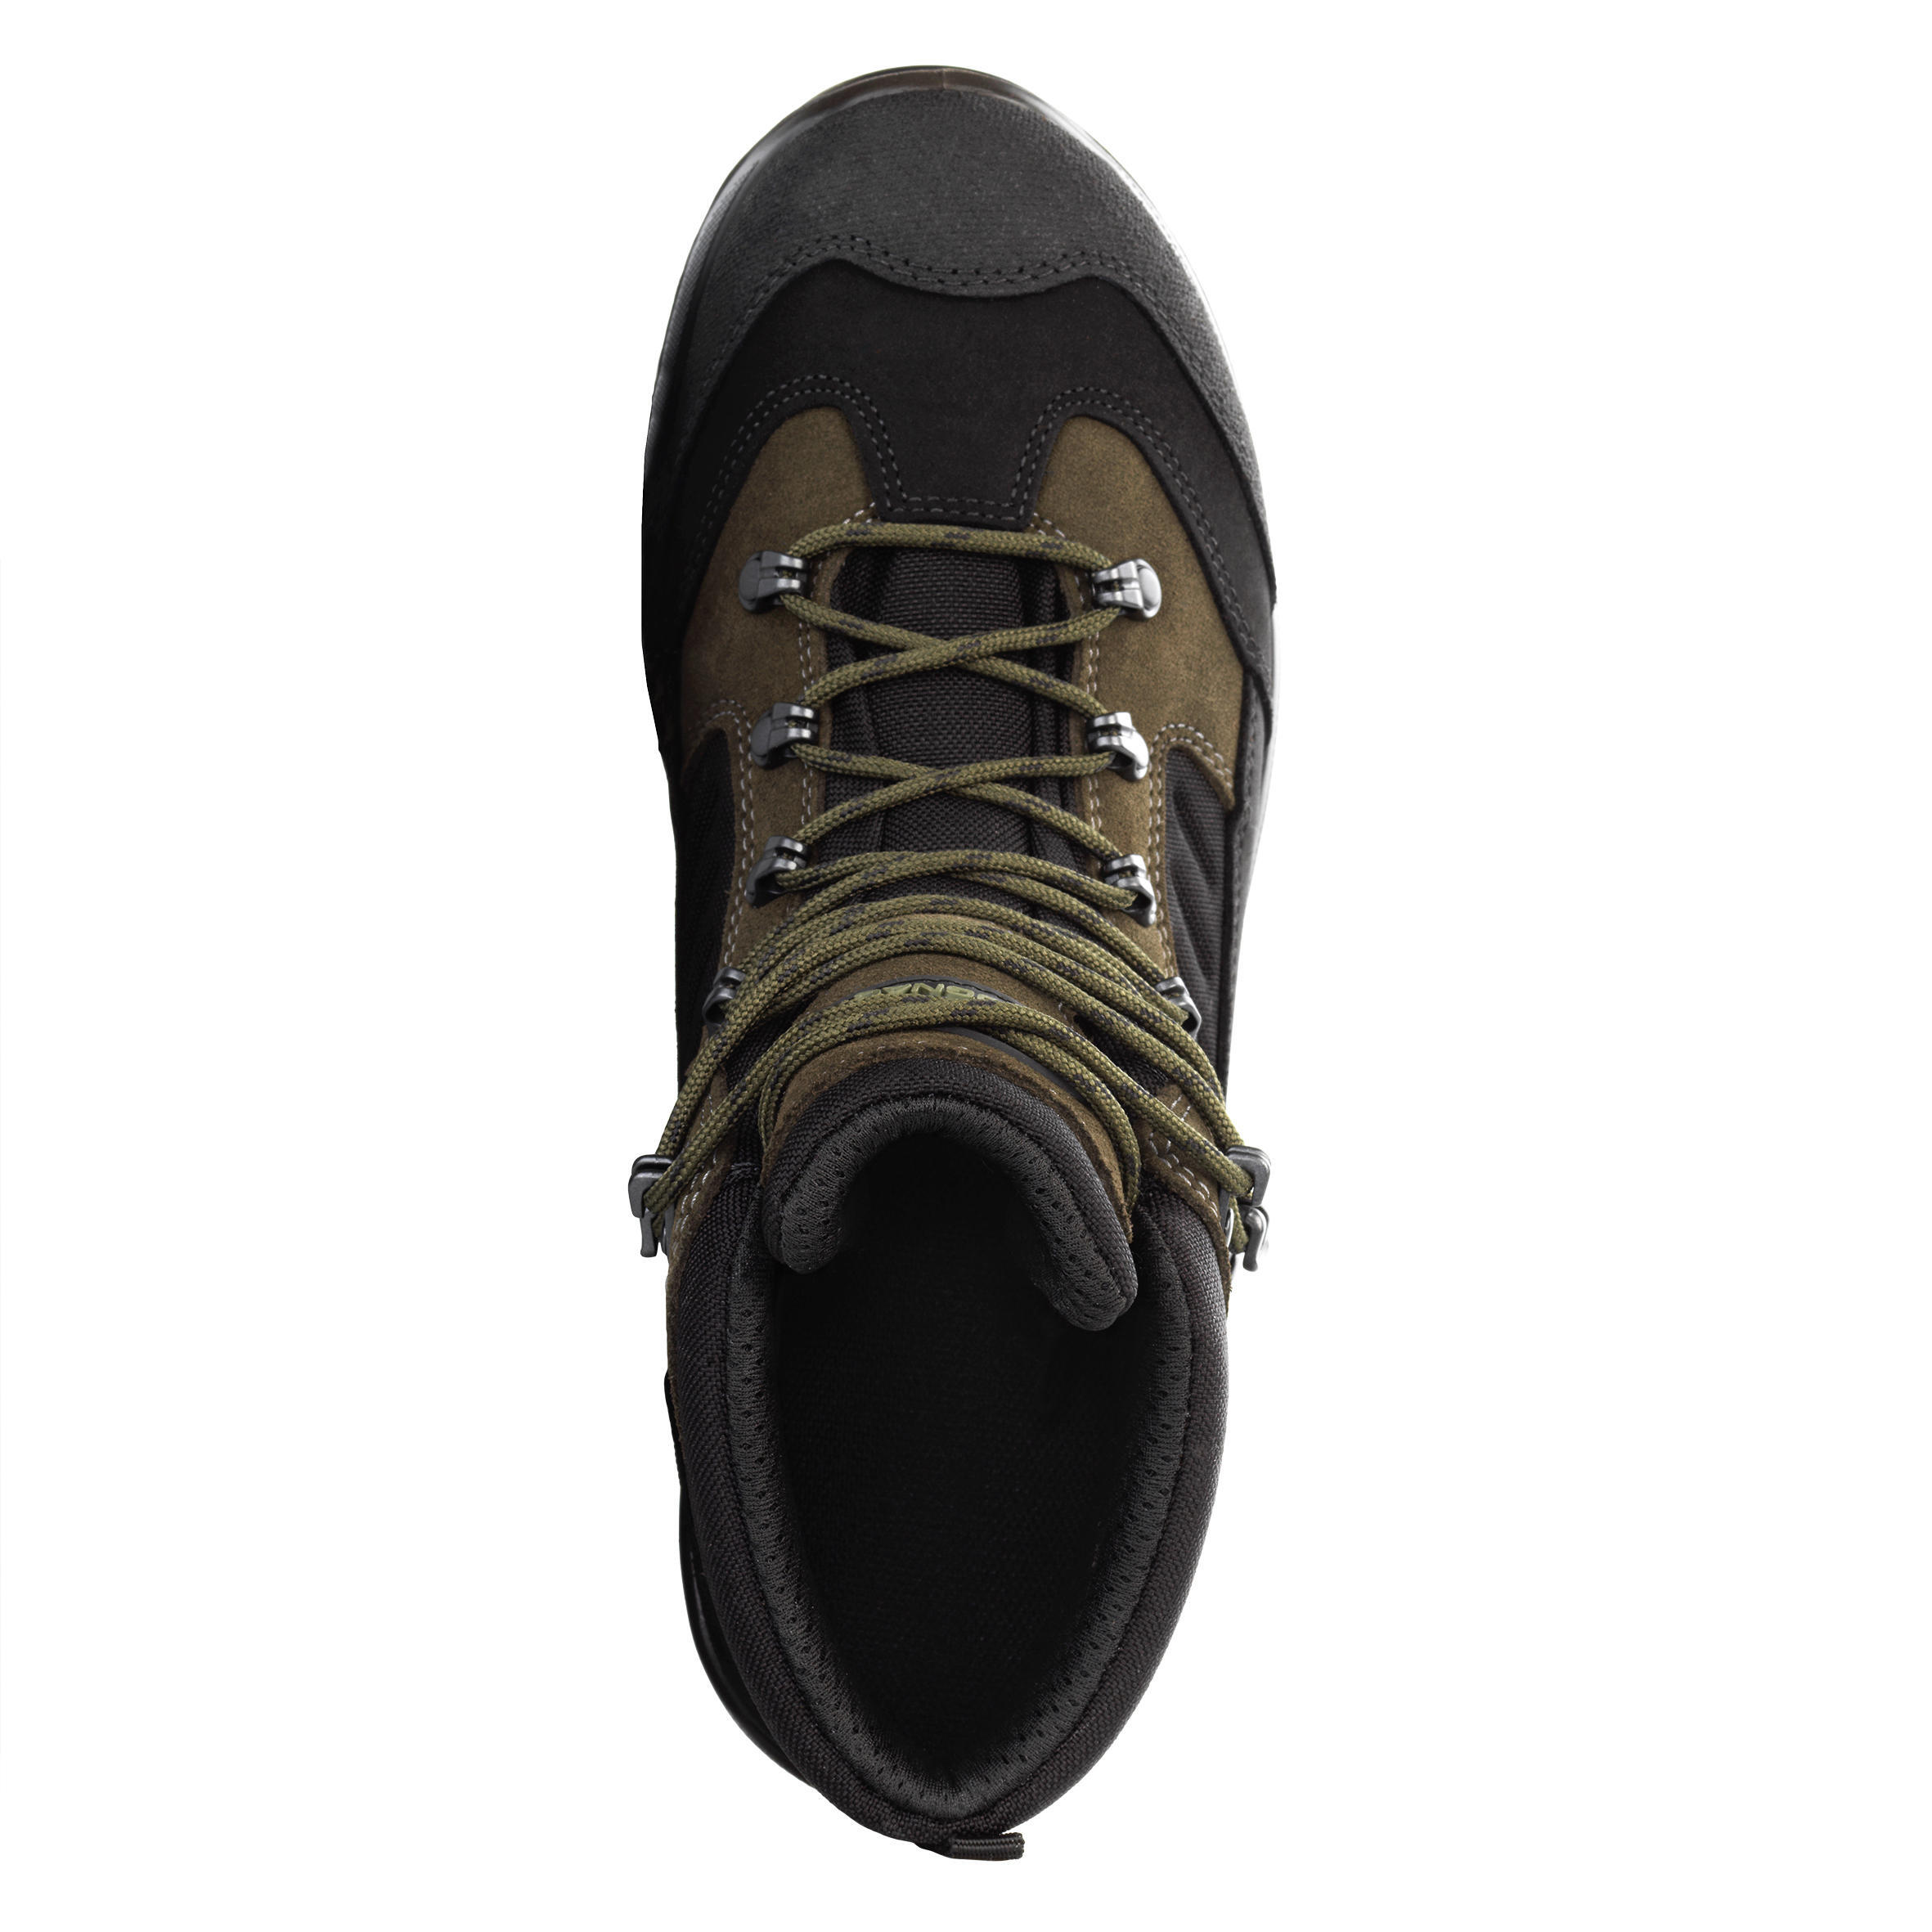 Waterproof Boots - Brown 4/7